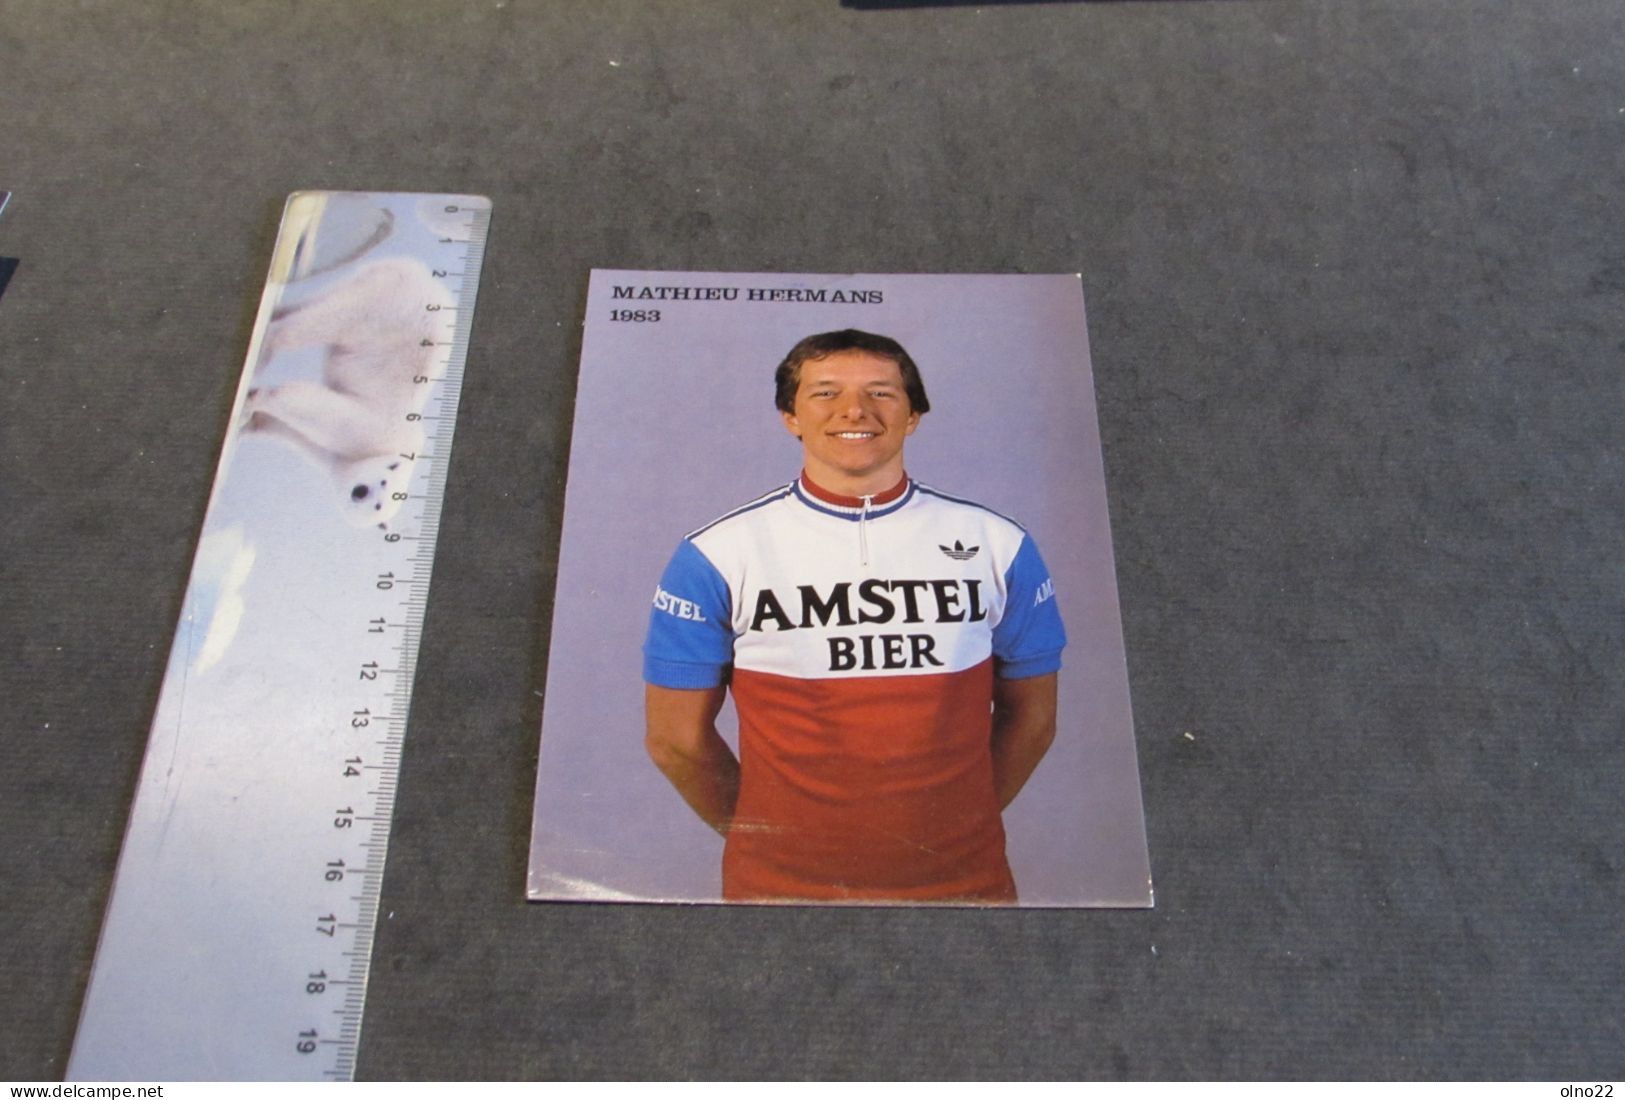 MATHIEU HERMANS 1983  - AMSTEL BIER - PHOTO COULEURS - VOIR SCANS - Sportifs